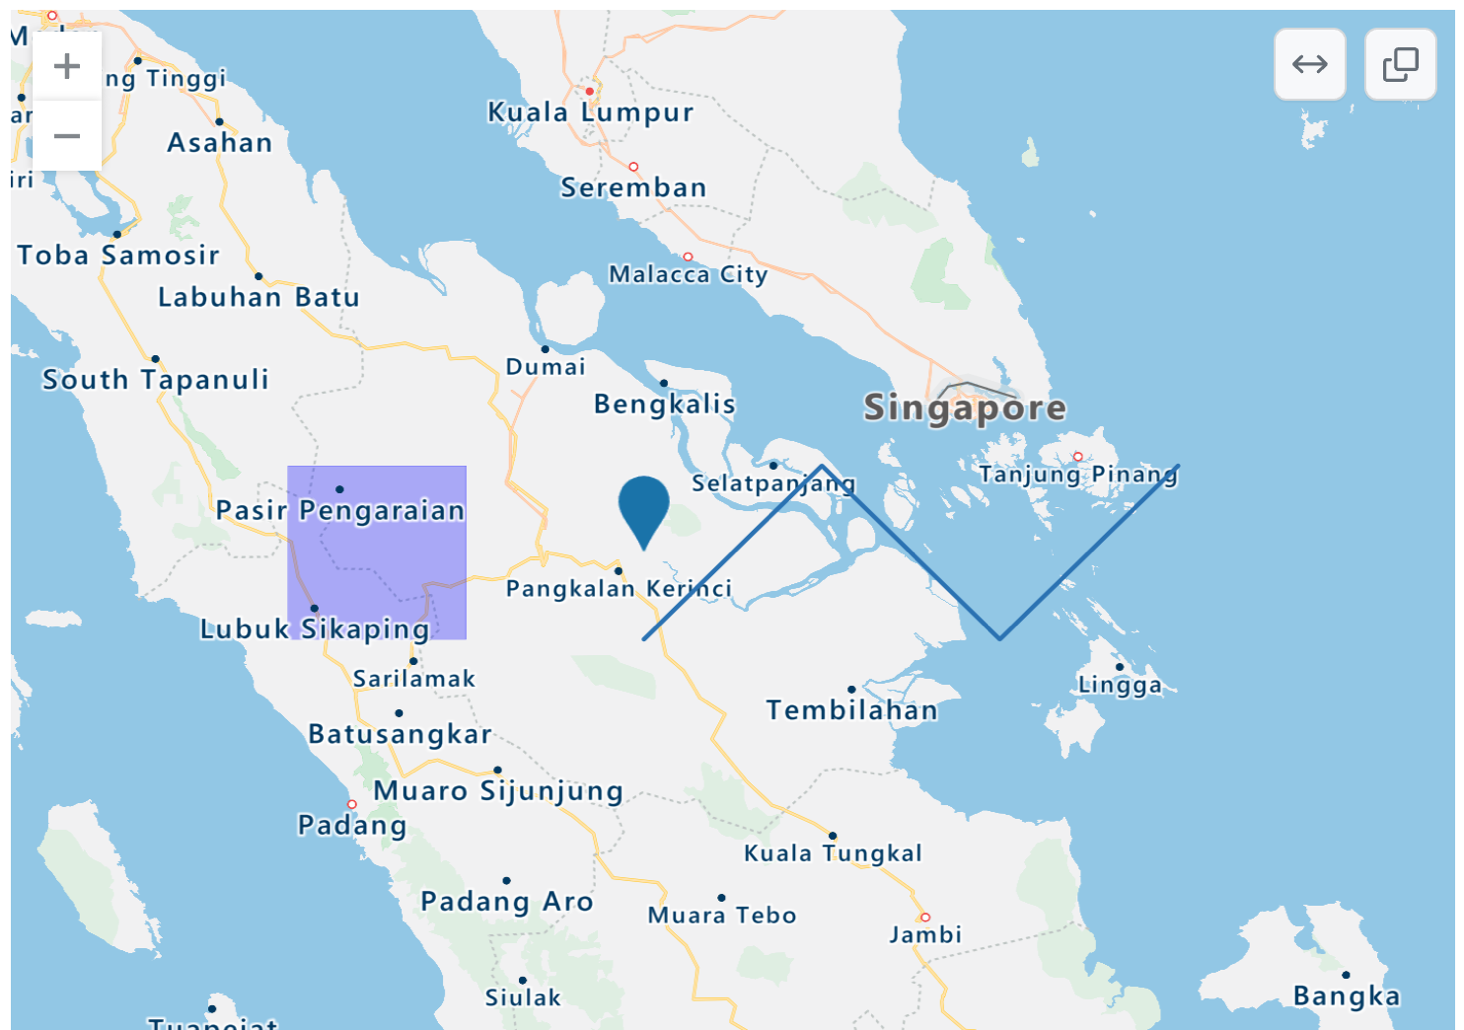 呈现的印度尼西亚、新加坡和马来西亚部分地区的 TopoJSON 地图的屏幕截图，其中包含蓝点、紫色矩形覆盖和蓝色曲折线。